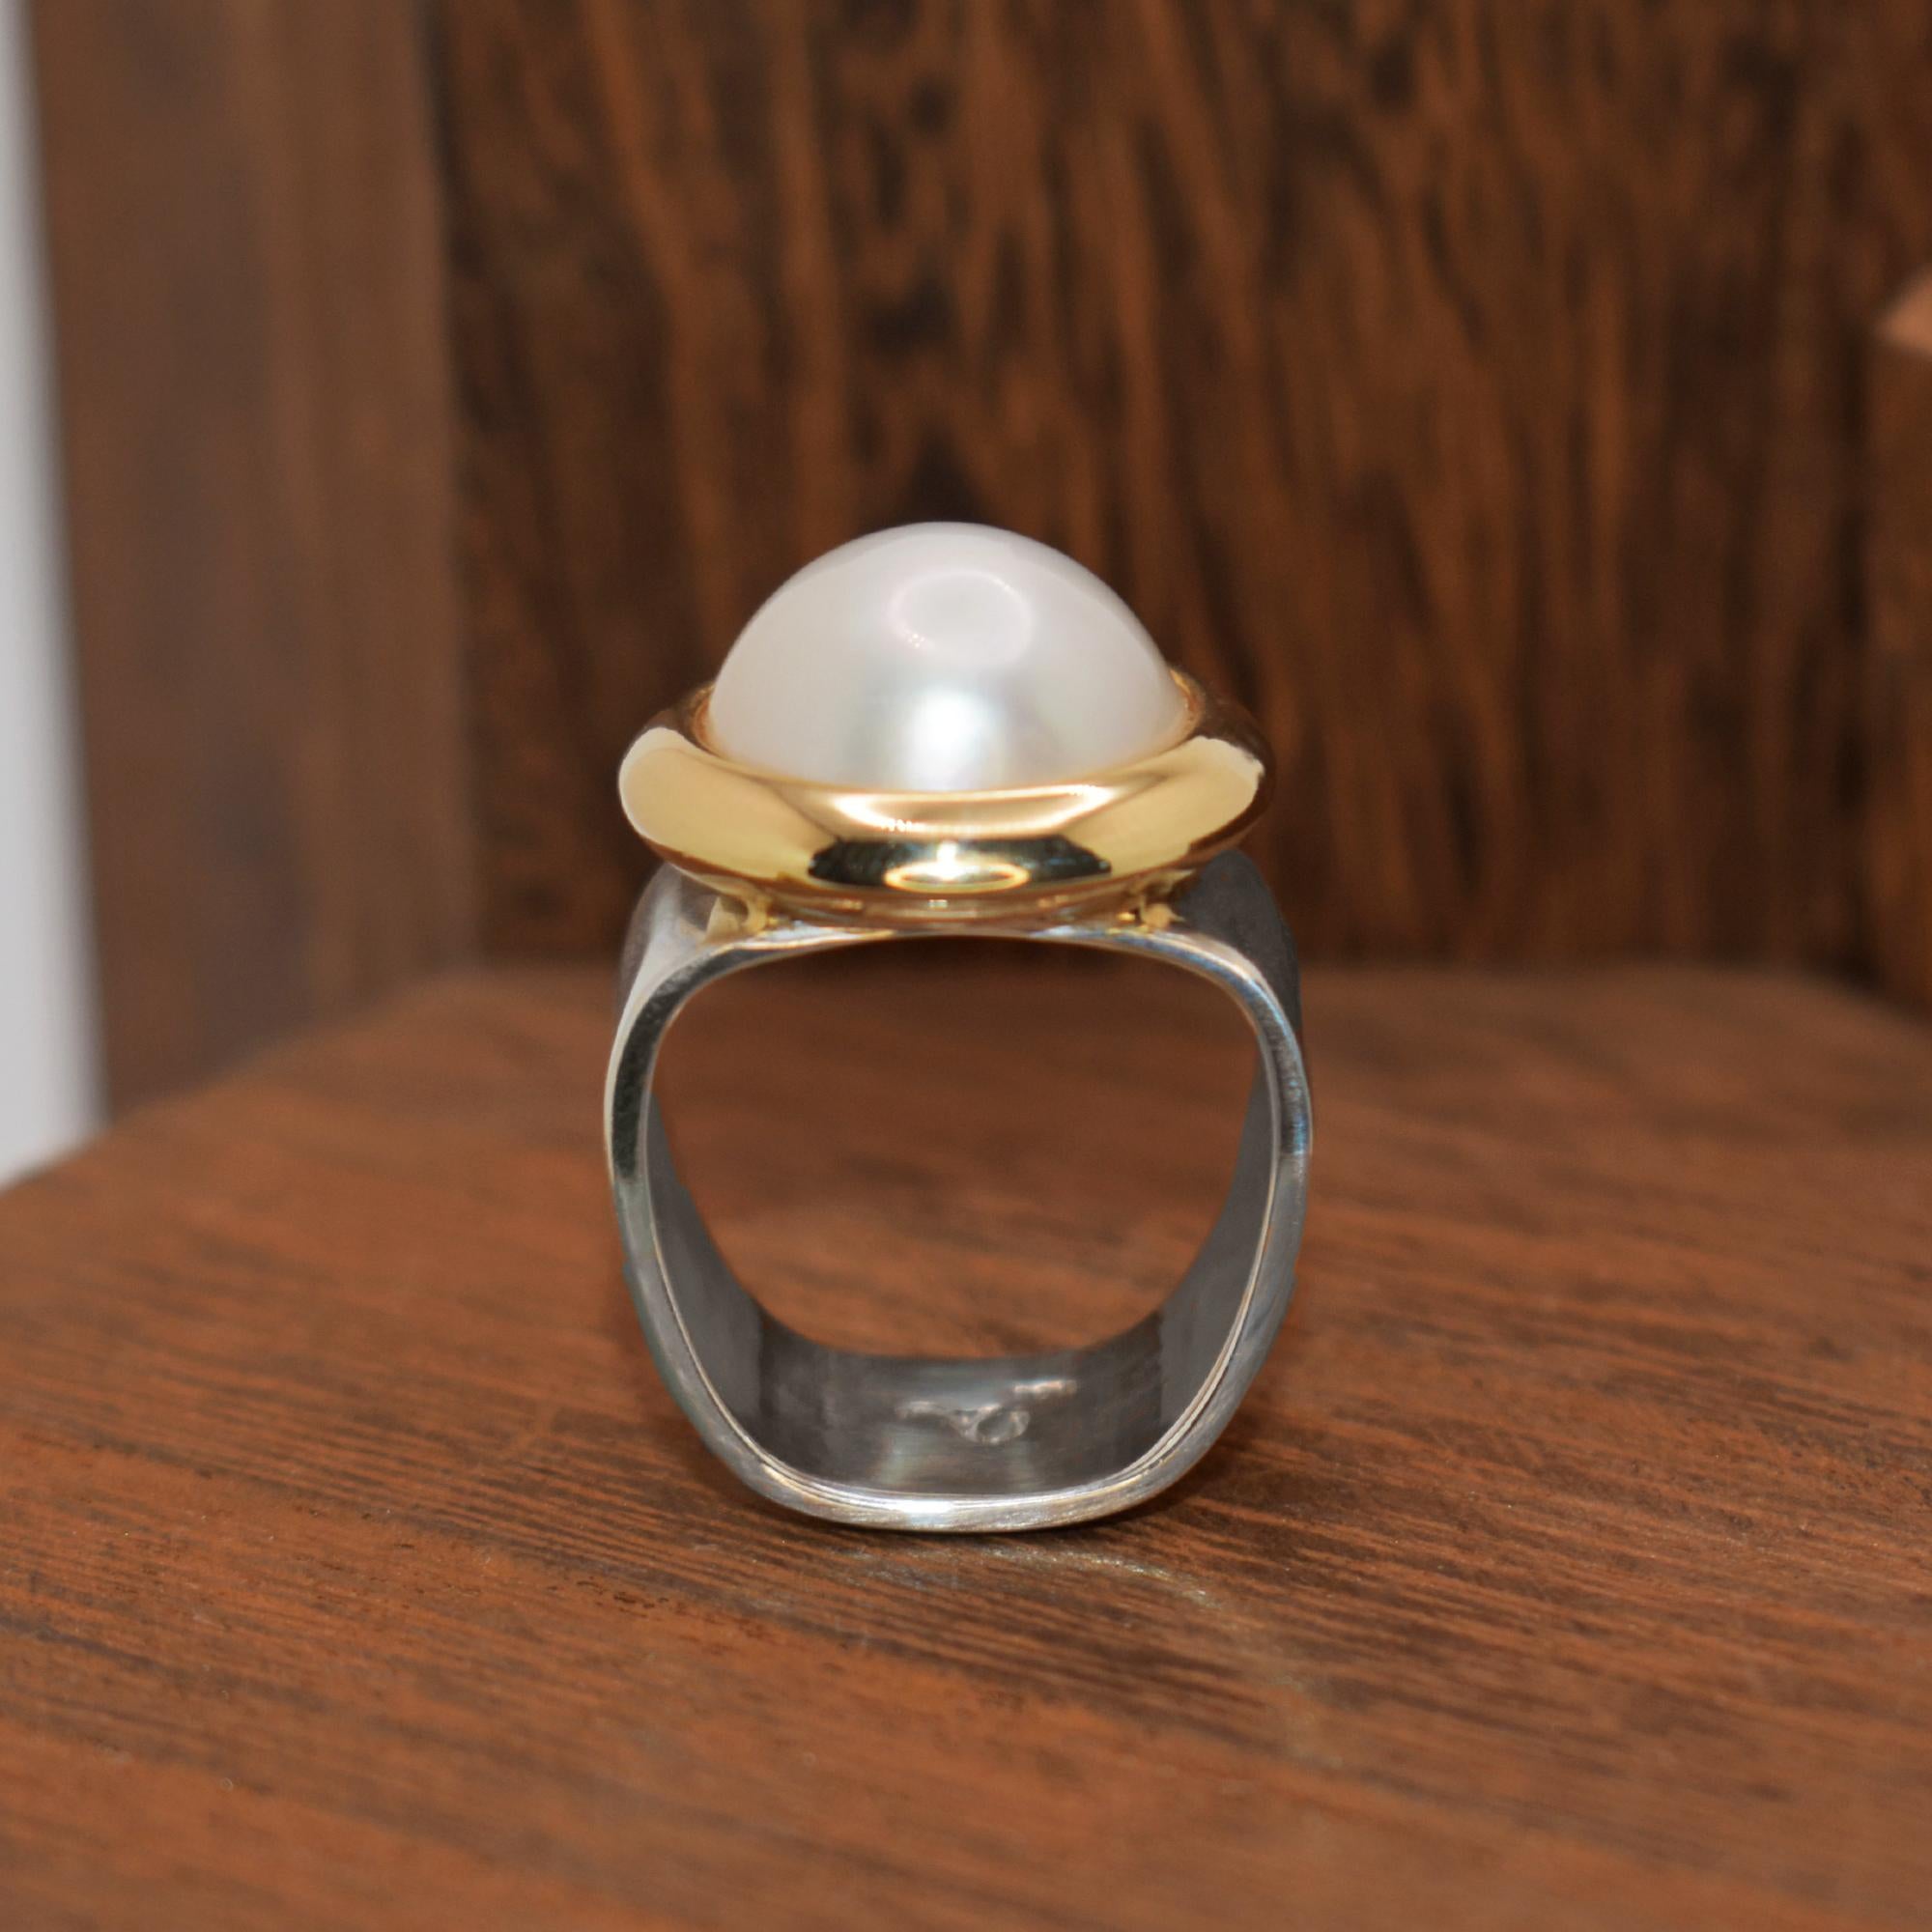 Süßwasser Mabé Perle in einem 14k Gelbgold modernen Lünette auf einem breiten Sterling Silber quadratische Form Ringband gesetzt. Der Cocktailring hat die Größe 7 und ist größenverstellbar. Die Mabé-Perle misst 15 mm im Durchmesser und 7 mm in der